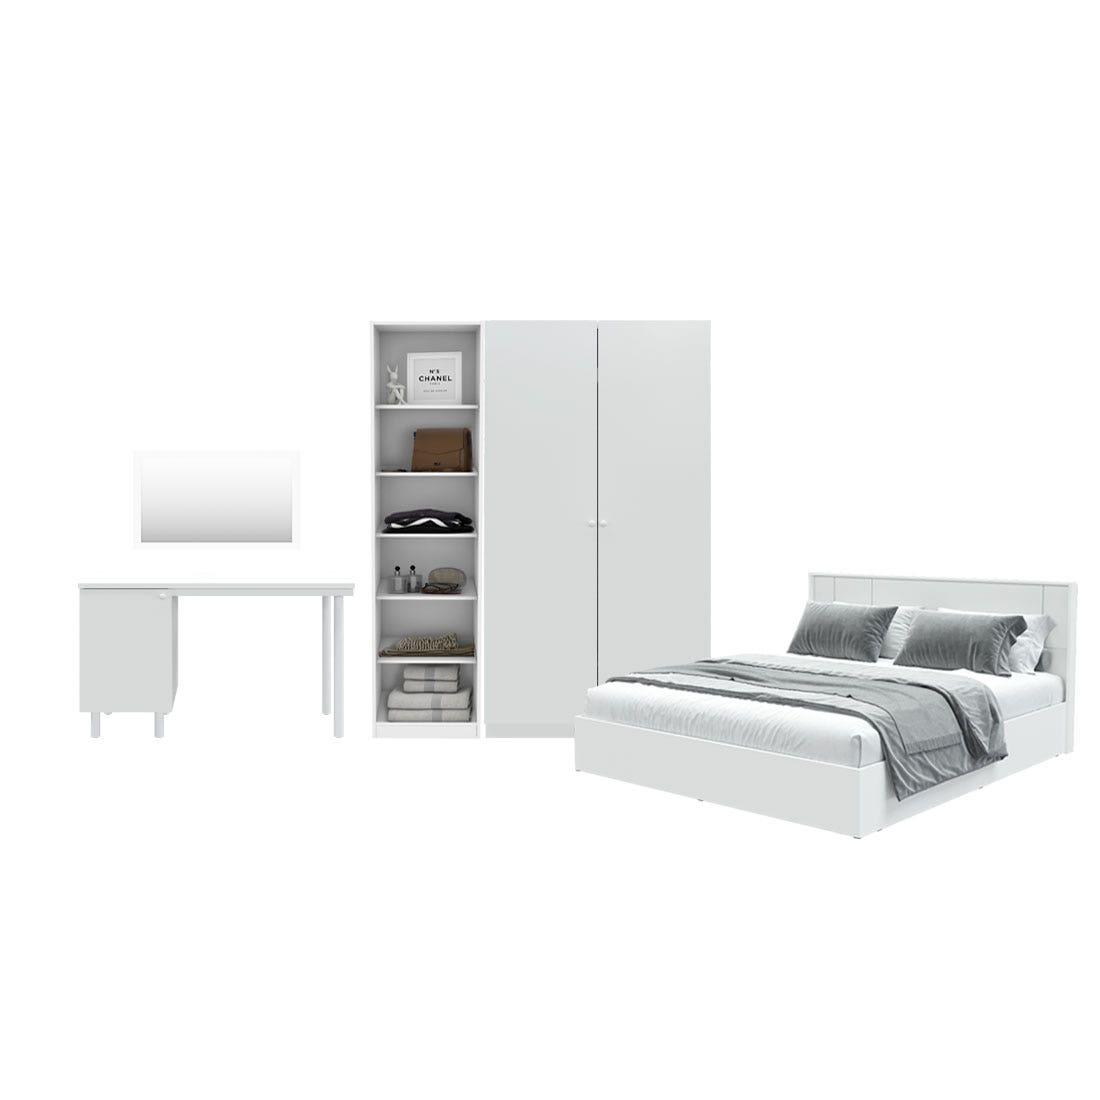 ชุดห้องนอน ขนาด 6 ฟุต รุ่น Pearliz และ ตู้ Blox ขนาด 150 ซม. พร้อมโต๊ะทำงาน สีขาว มิดกรอส01